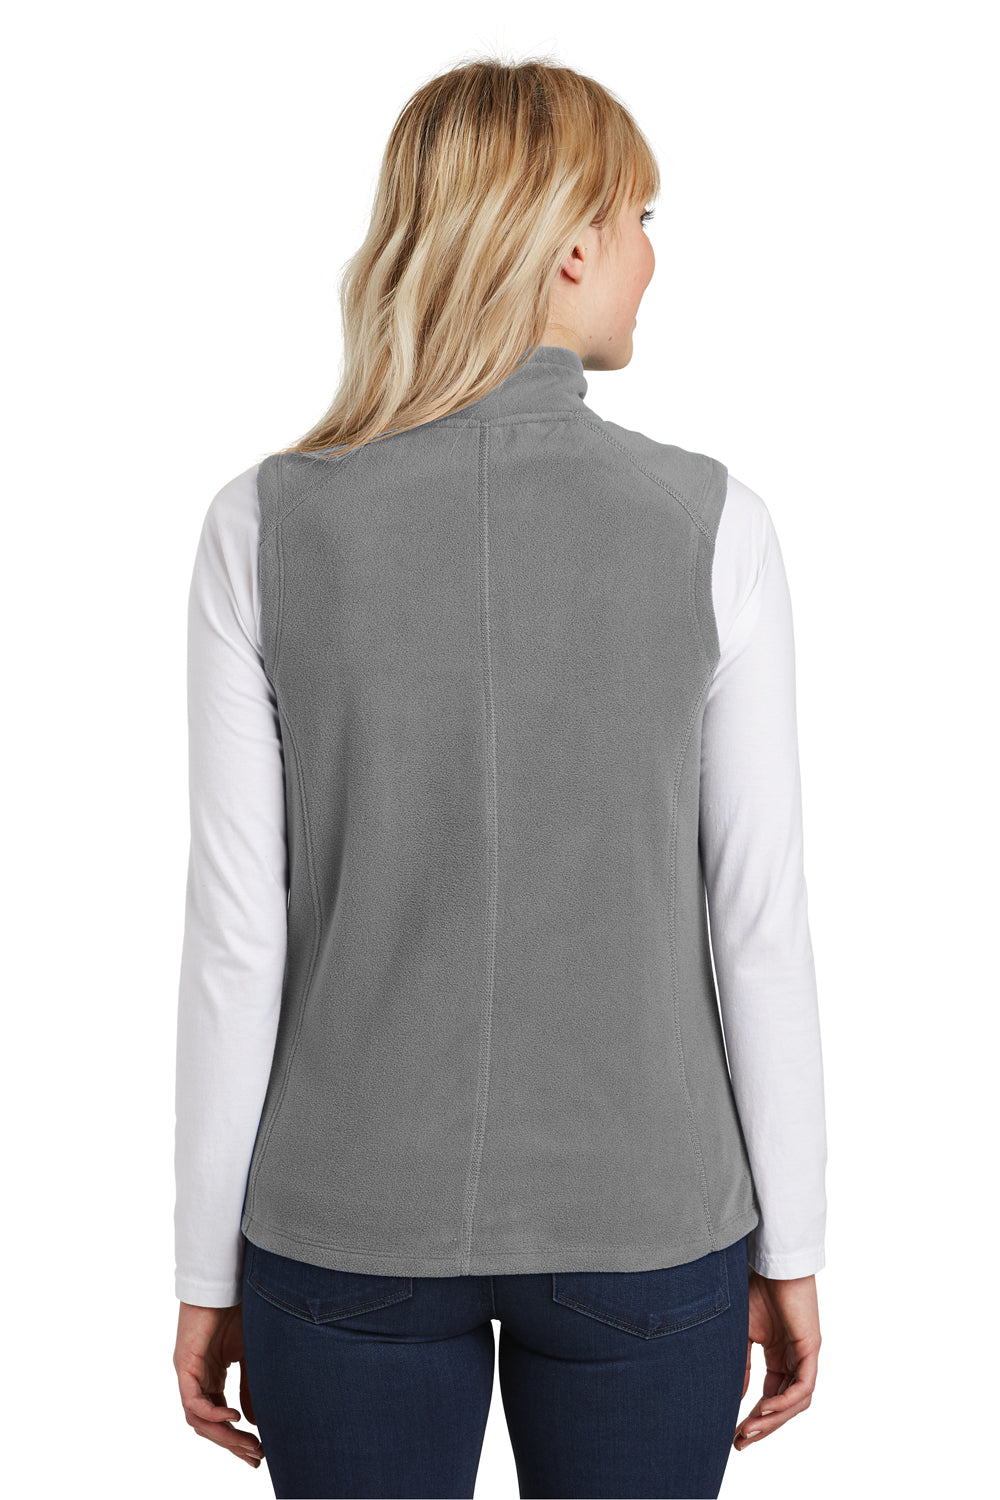 Port Authority L226 Womens Full Zip Microfleece Vest Grey Back